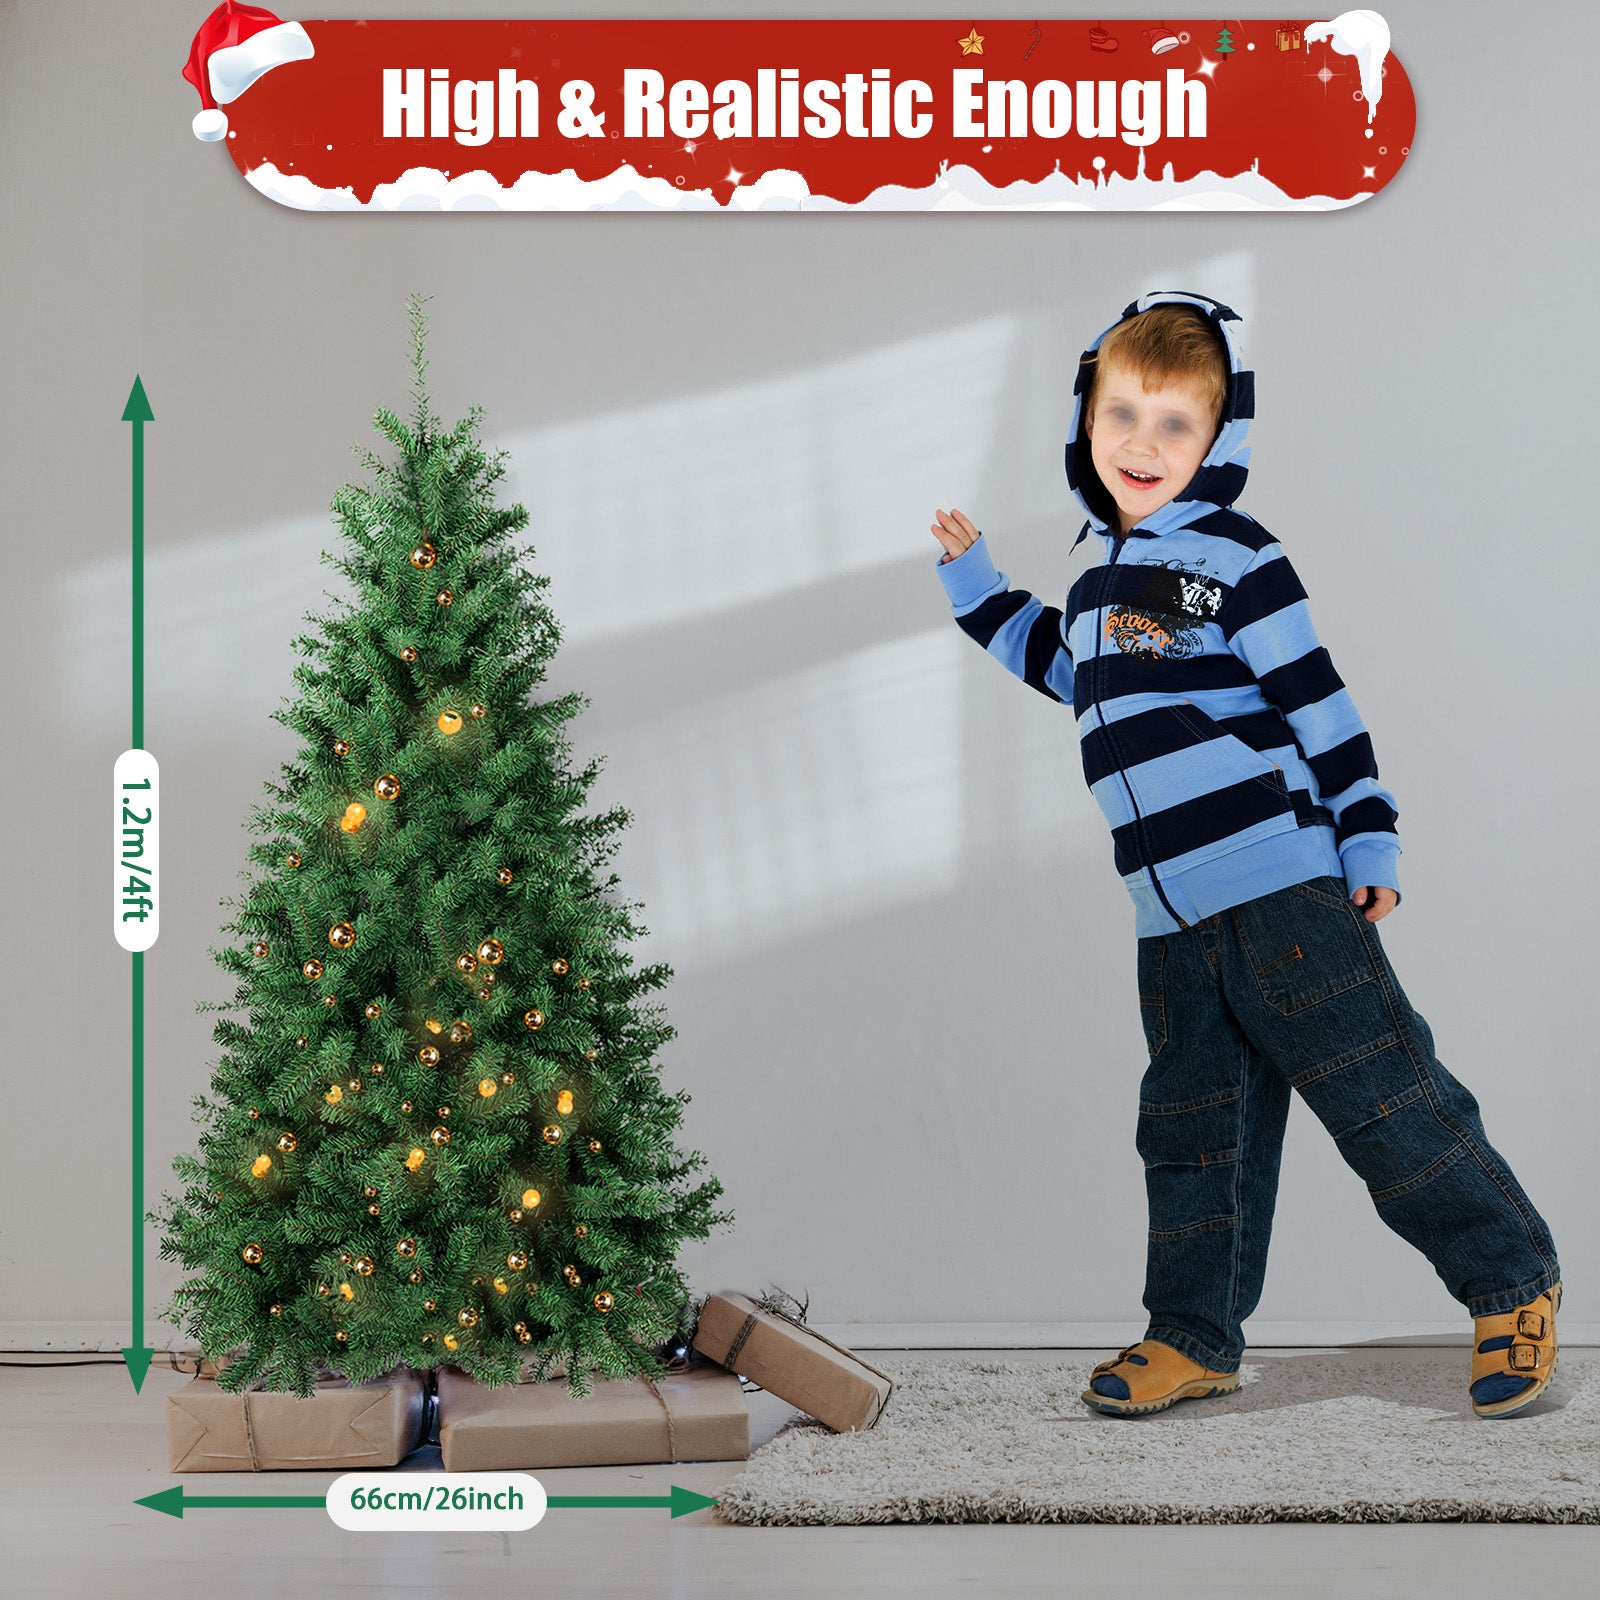 Hochwertiger Automatisch Weihnachtsbaum Künstlicher Leicht und einfach zu montieren mit Metallständer